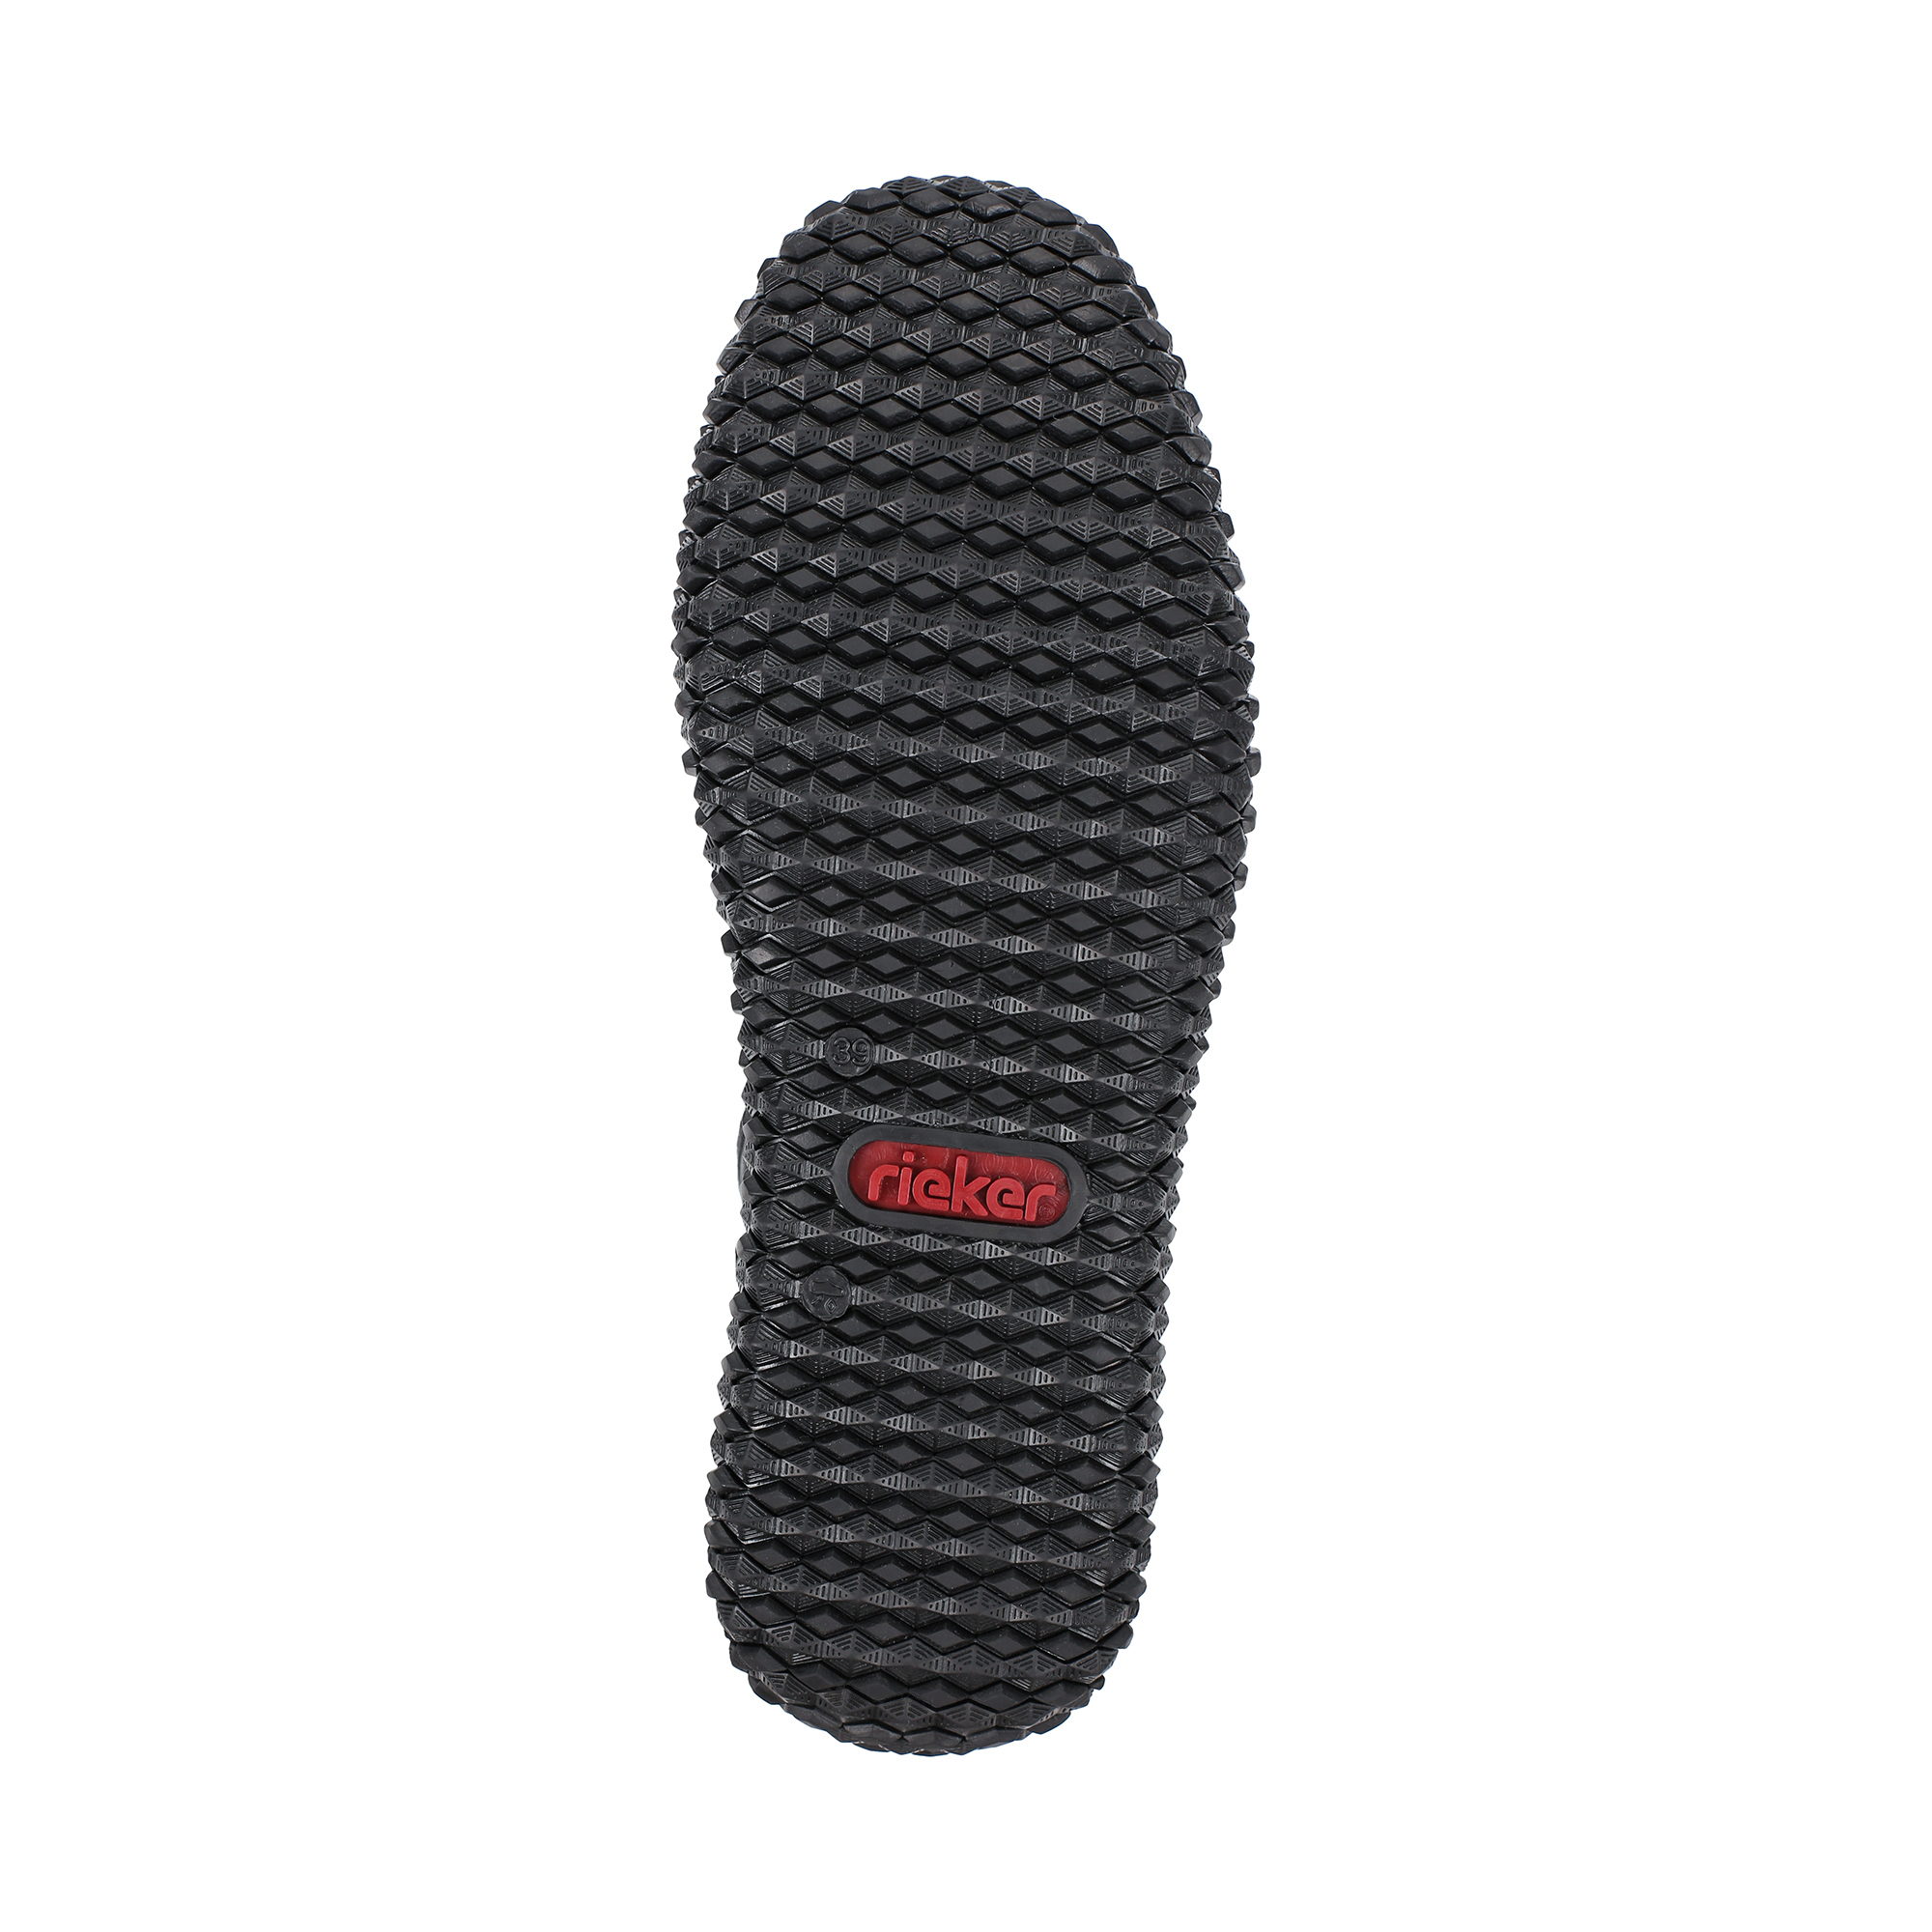 Ботинки Rieker Z4226-00, цвет черный, размер 38 - фото 4